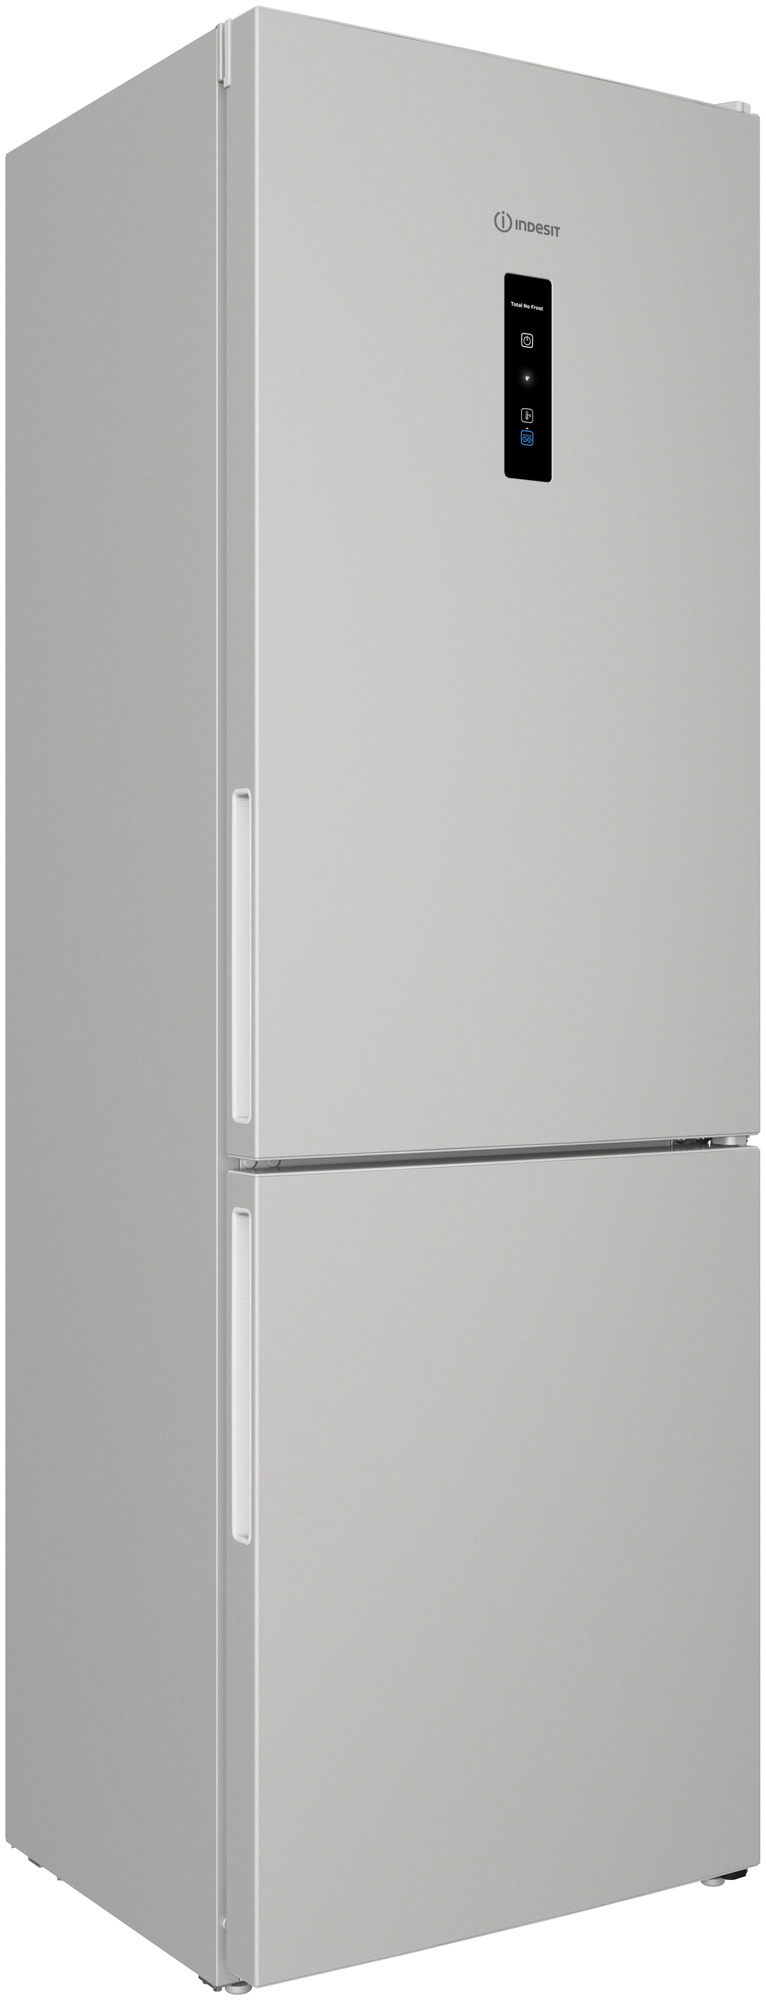 Двухкамерный холодильник Indesit - фото №2